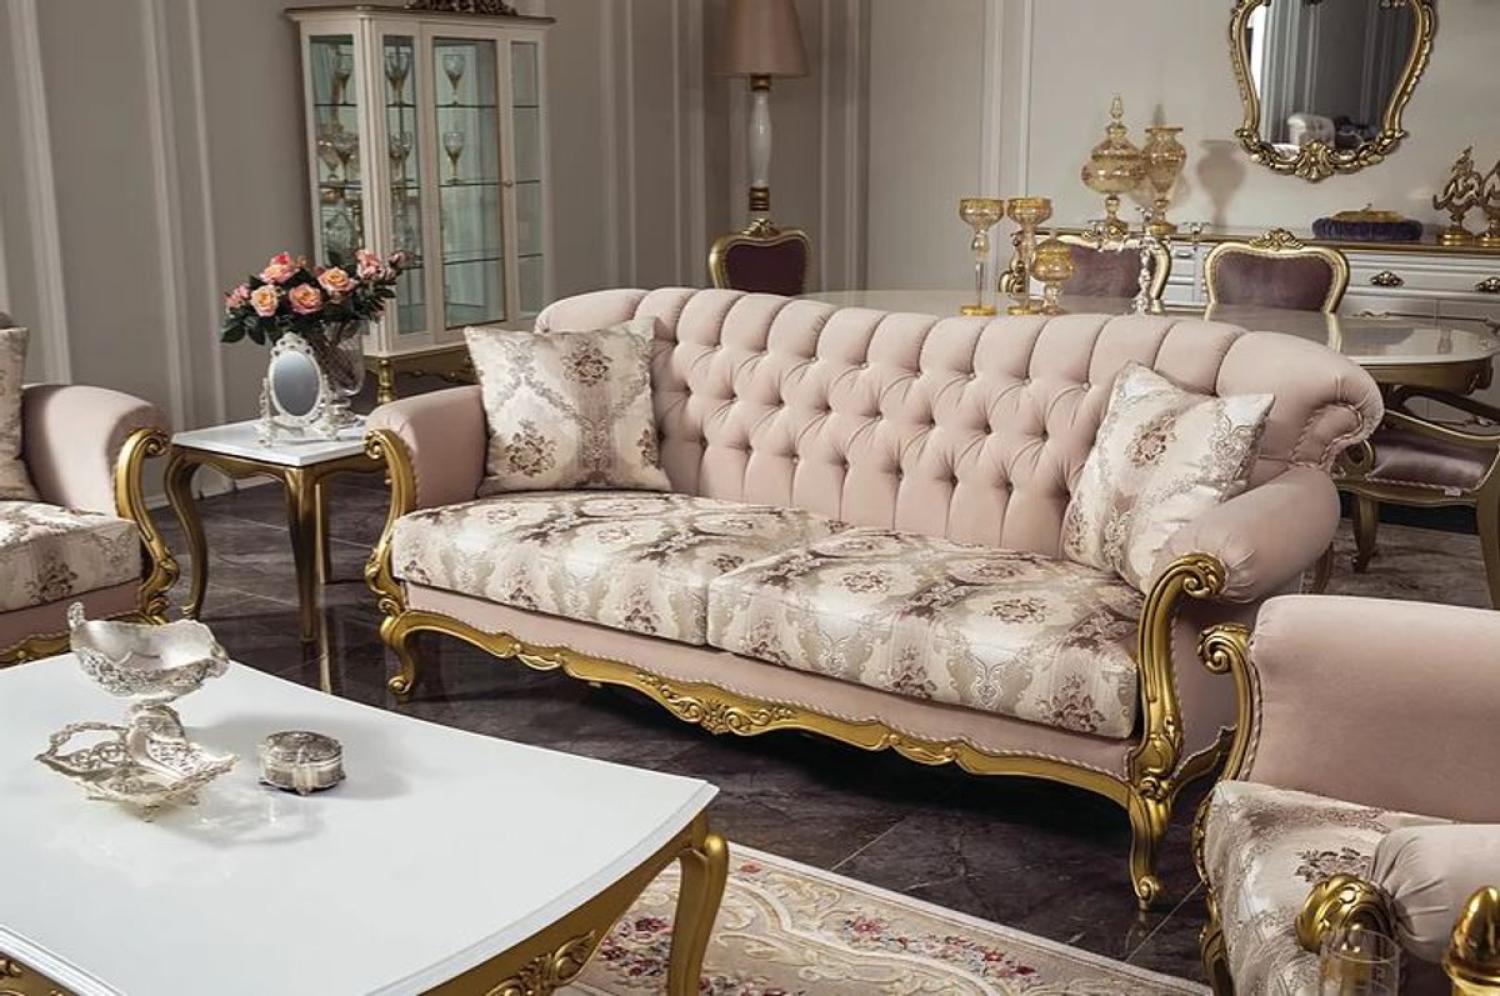 Casa Padrino Luxus Barock Wohnzimmer Sofa Rosa / Gold 220 x 82 x H. 95 cm - Massivholz Sofa mit elegantem Muster und dekorativen Kissen Bild 1